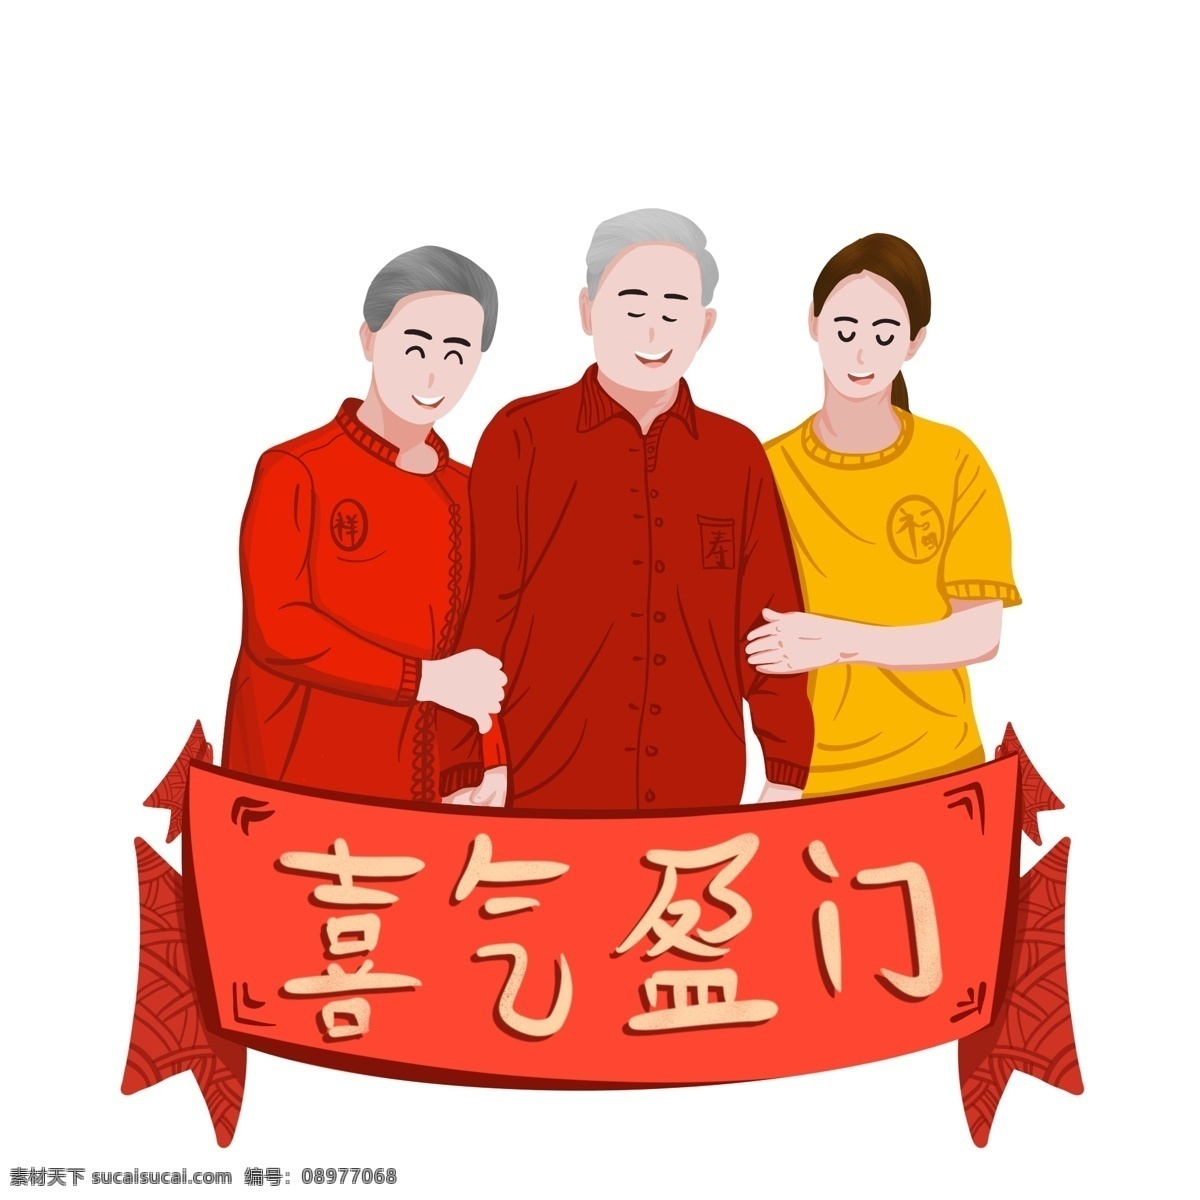 2019 新年 春节 猪年 一家人 手绘 温馨 插画